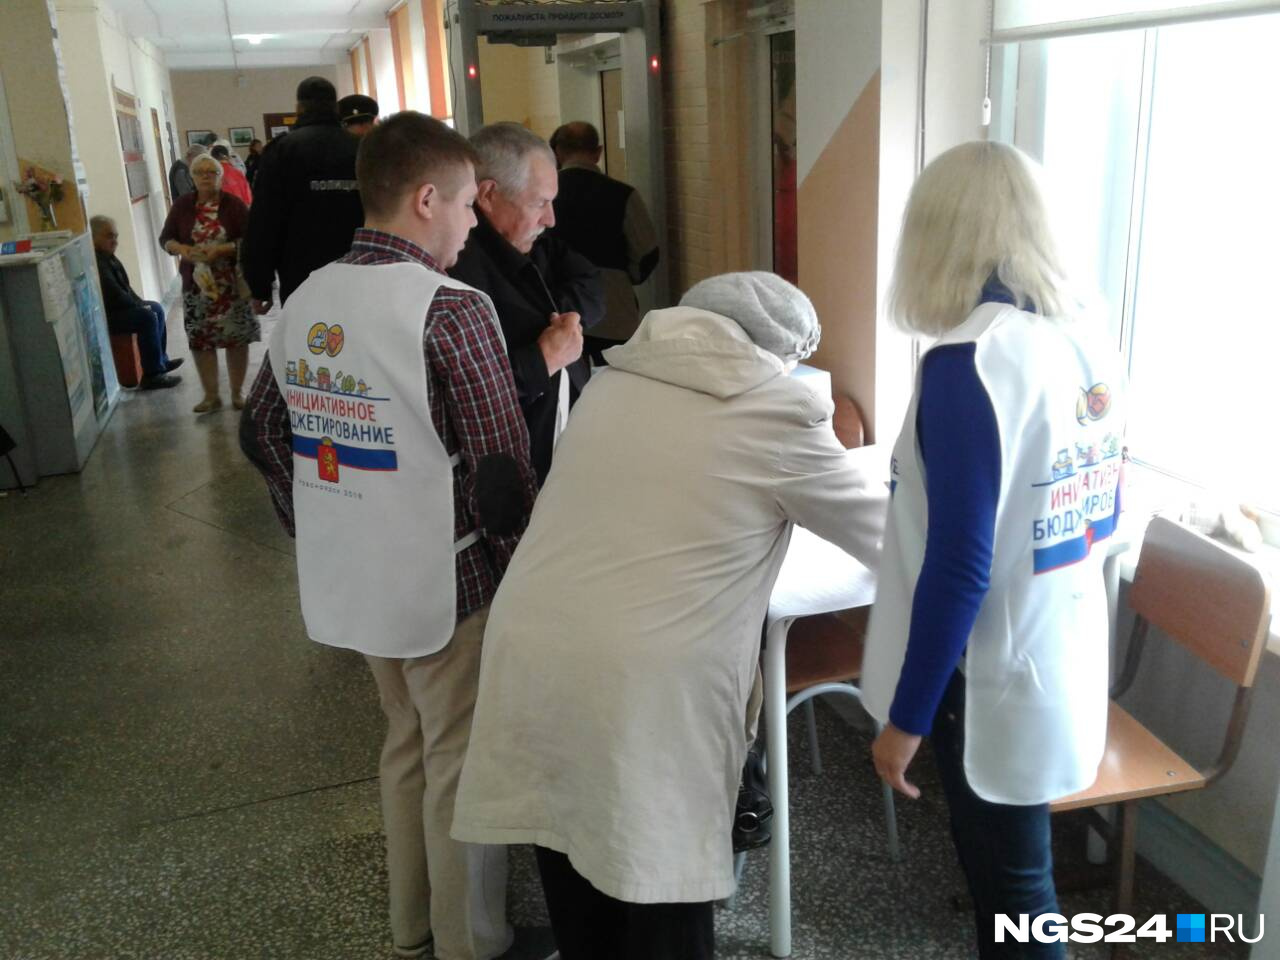 Волонтеры очень активно призывают красноярцев голосовать за проекты скверов